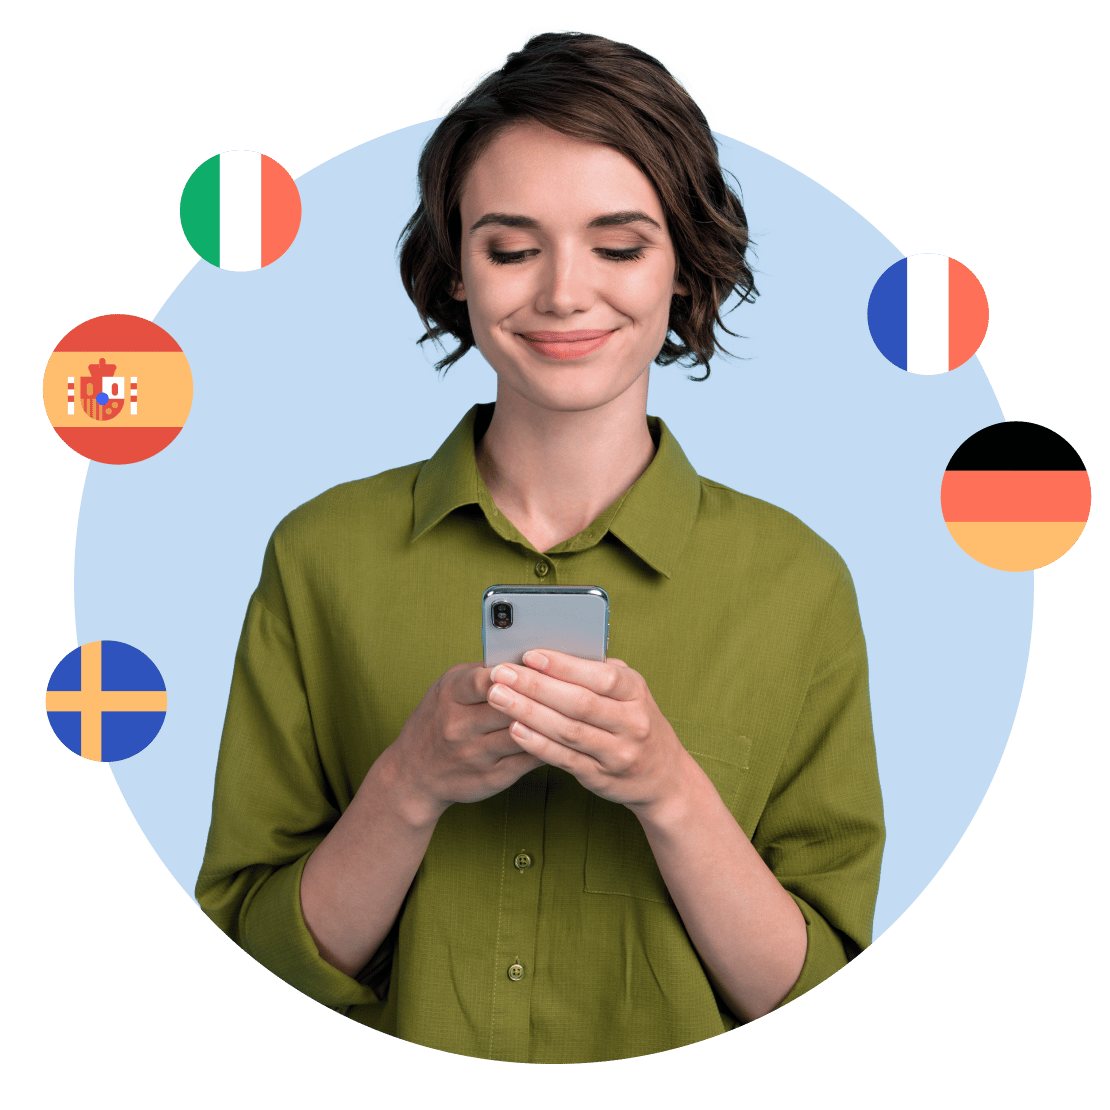 امرأة تتعلم بسعادة عدة لغات على Duolingo مع زيادة الخصوصية بفضل NordVPN.